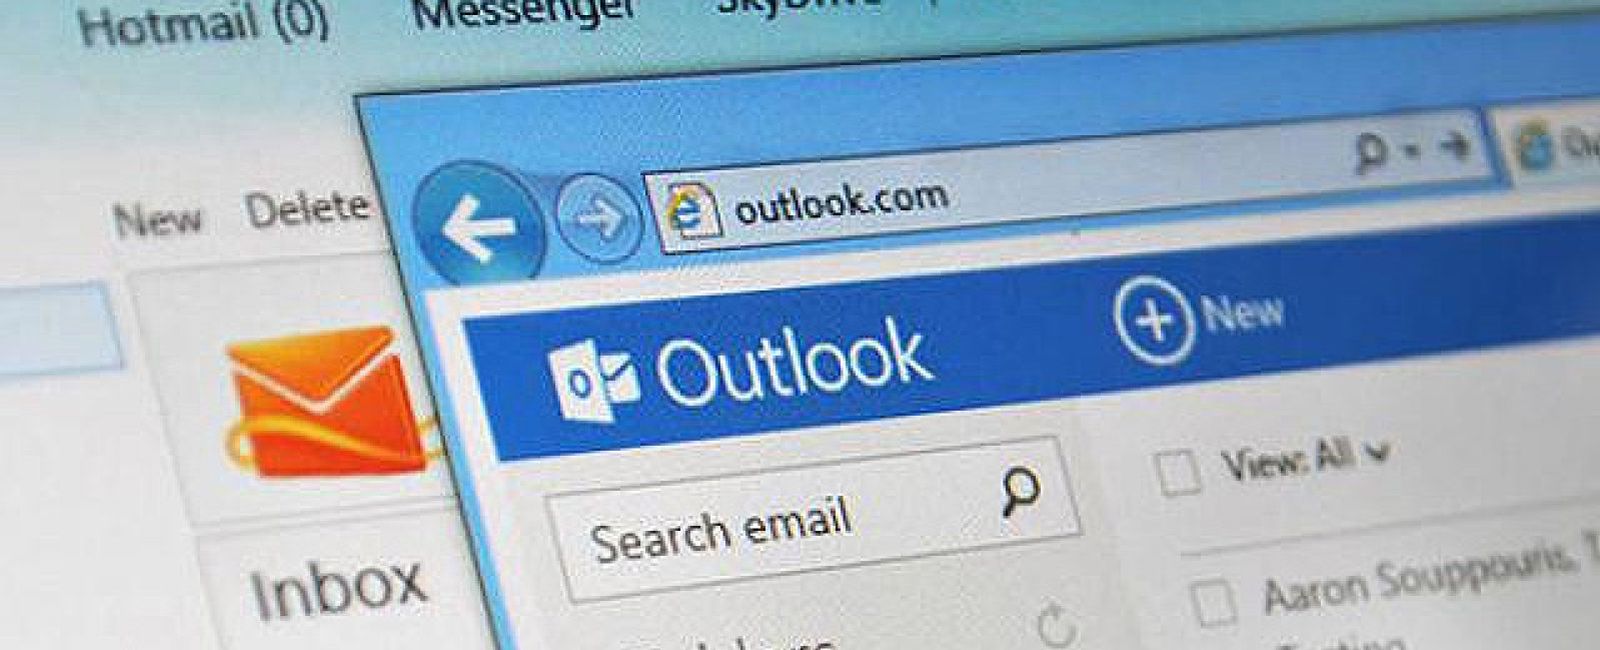 Foto: Hotmail se acaba hoy: pasos a seguir para usar el nuevo Outlook